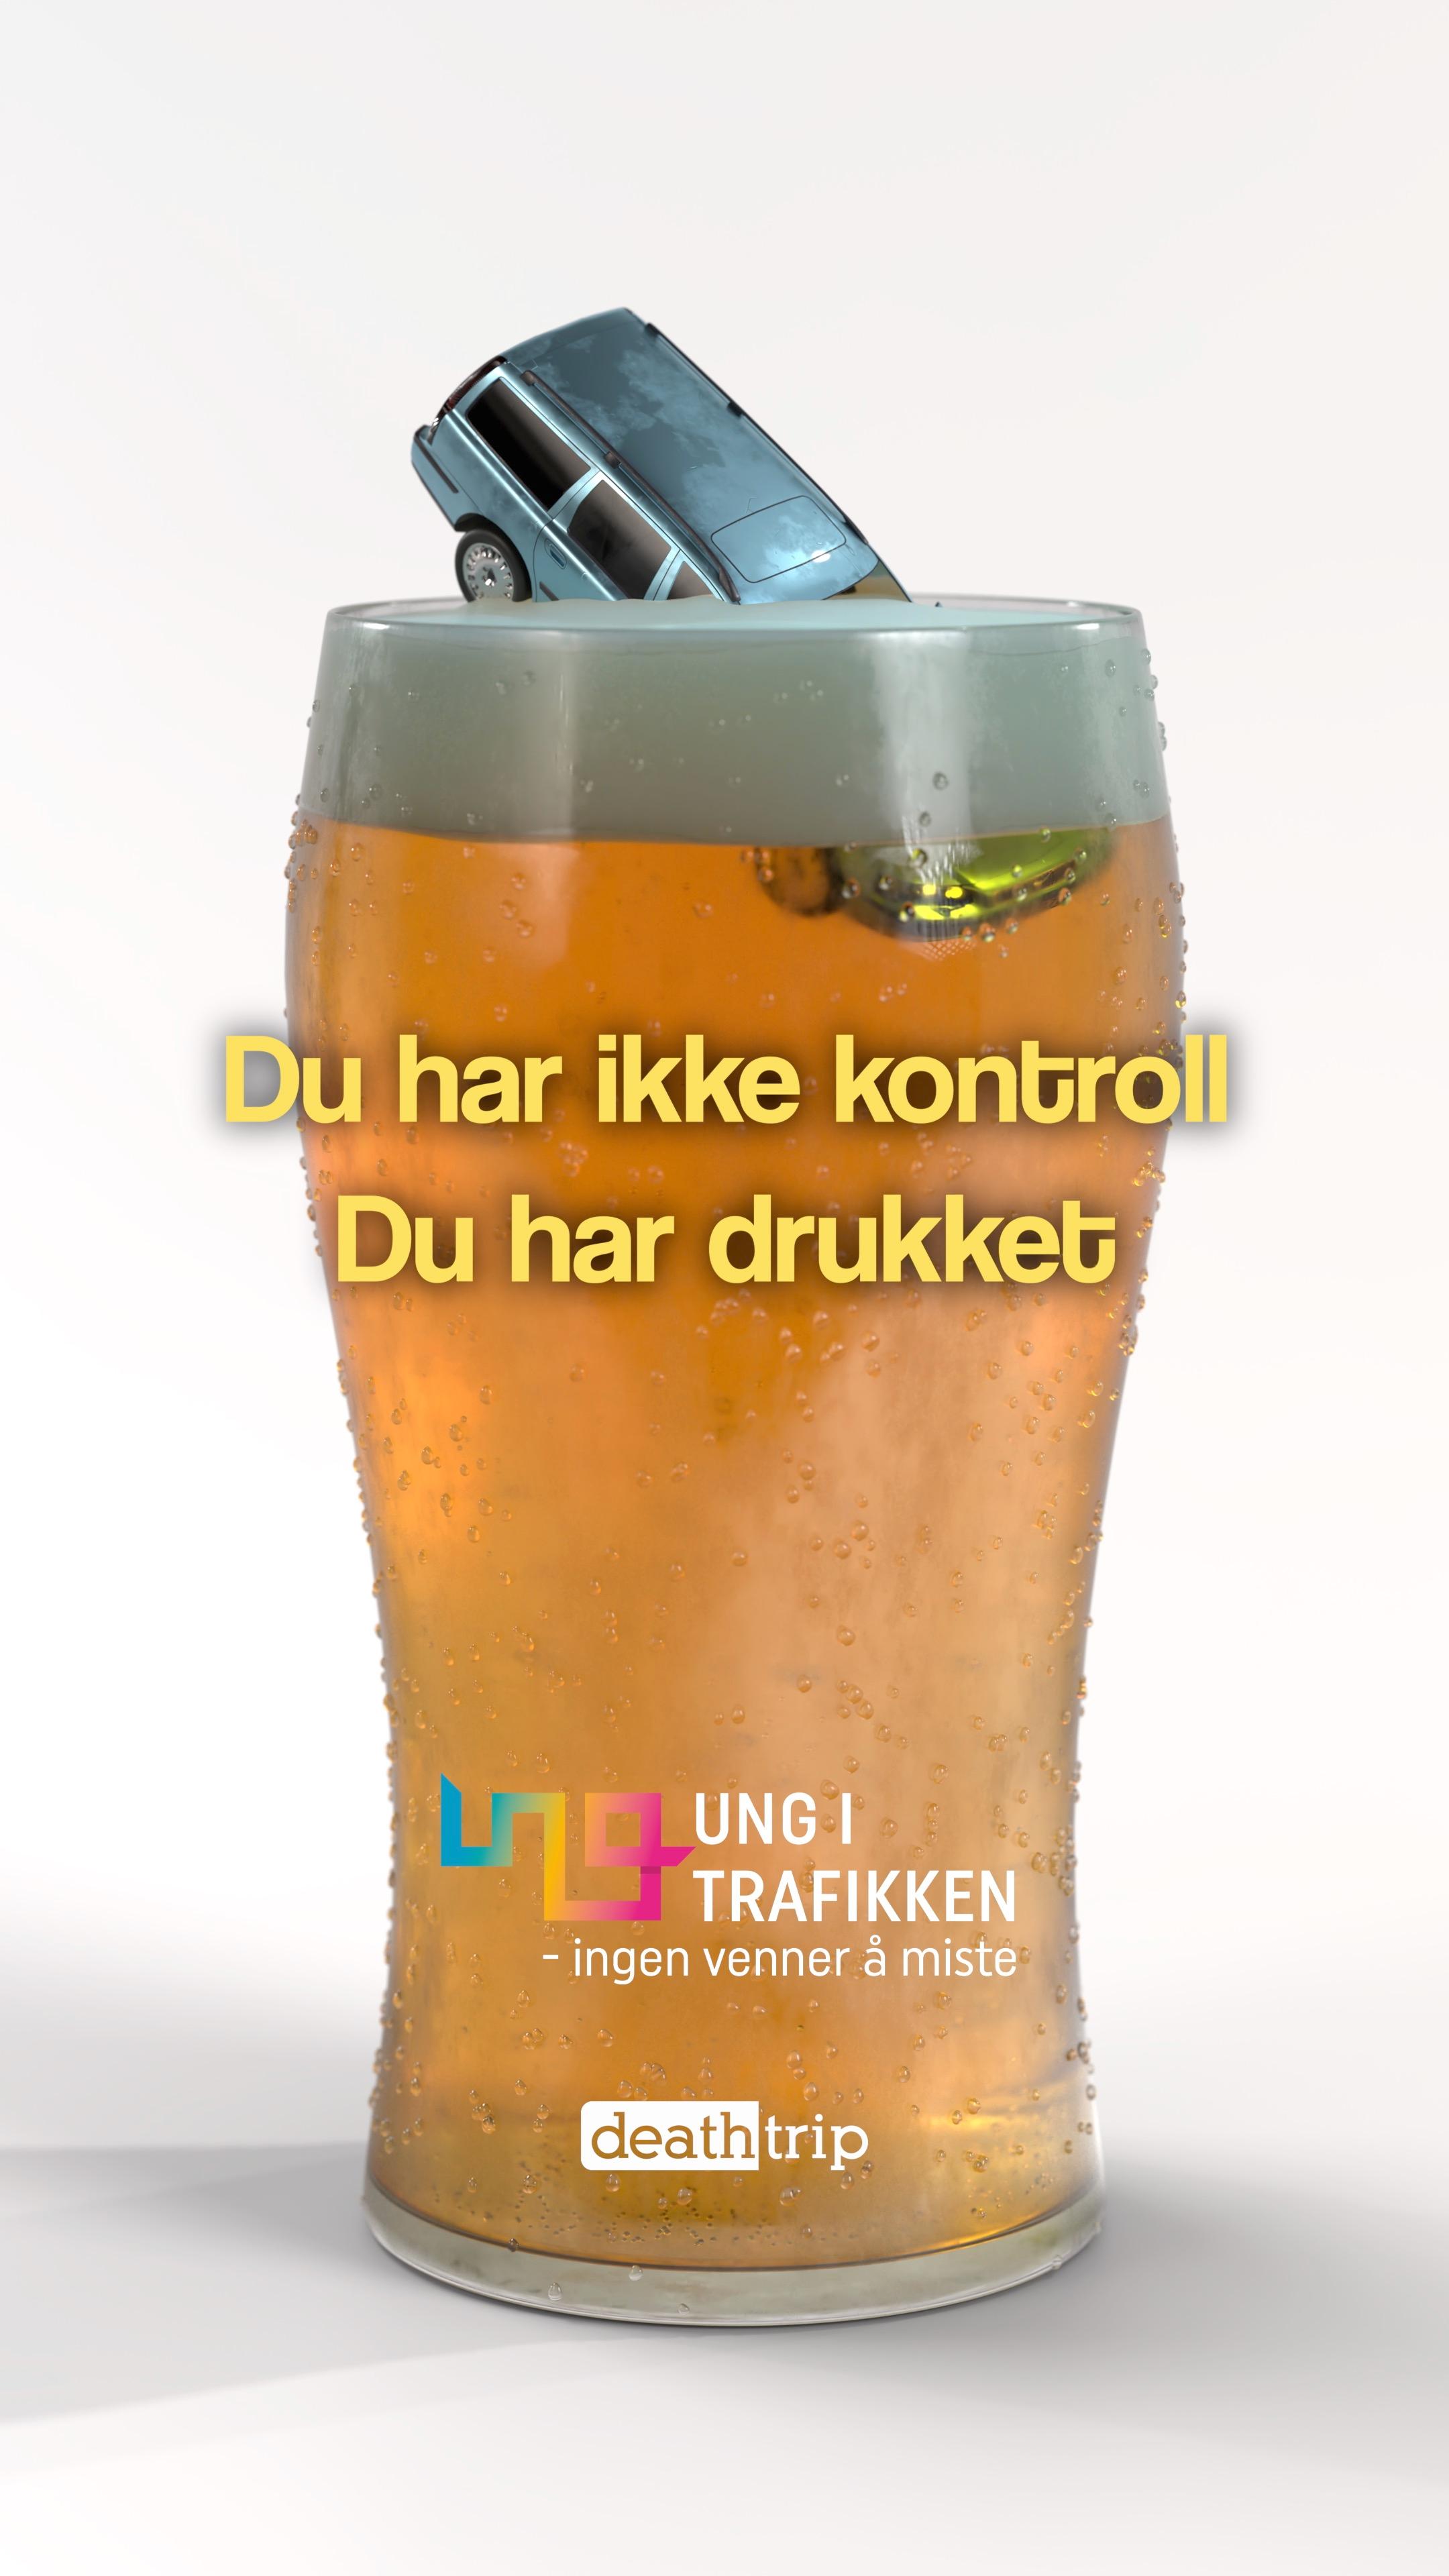 Plakat med en bil i et ølglass, med teksten: Du har ikke kontroll, du har drukket.